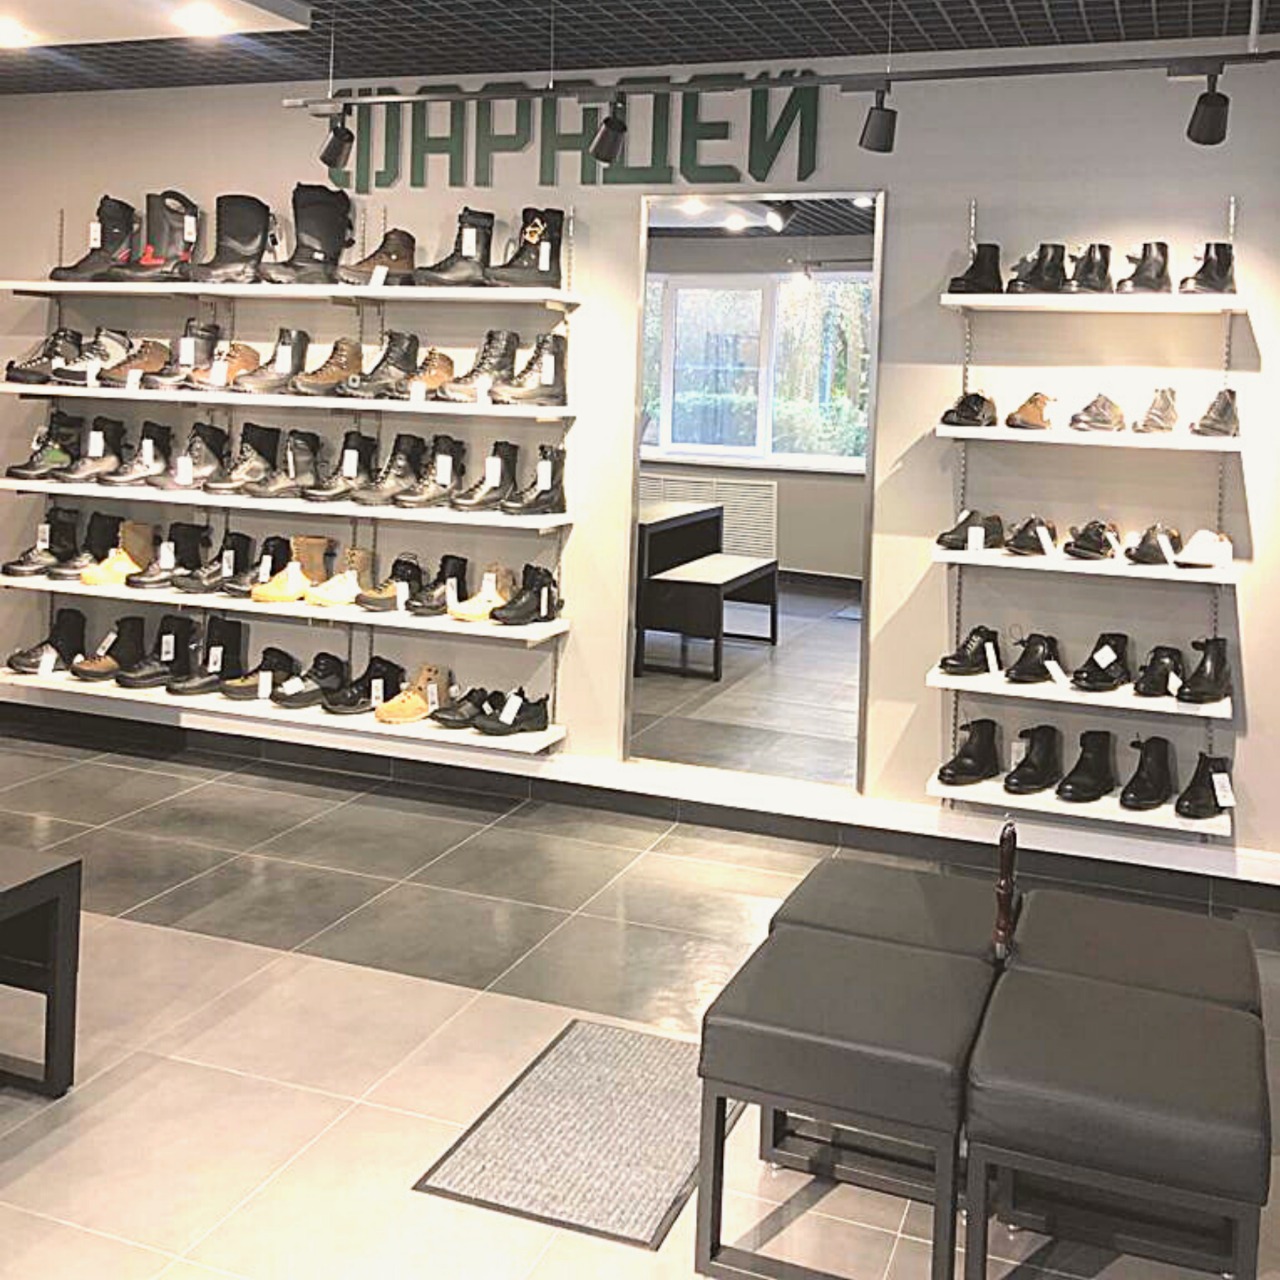 Магазины Обуви С Доставкой По России